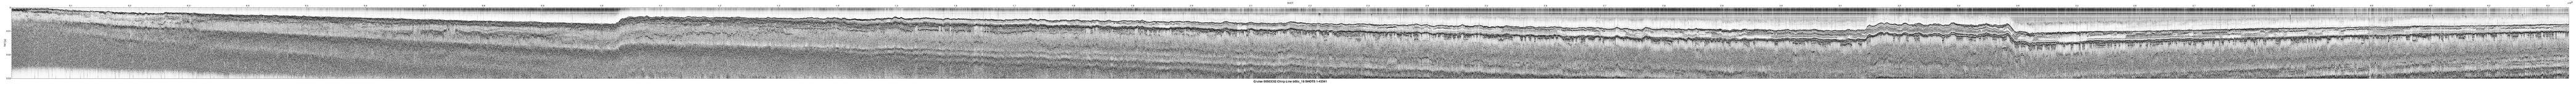 00SCC02 b00c_19 seismic profile image